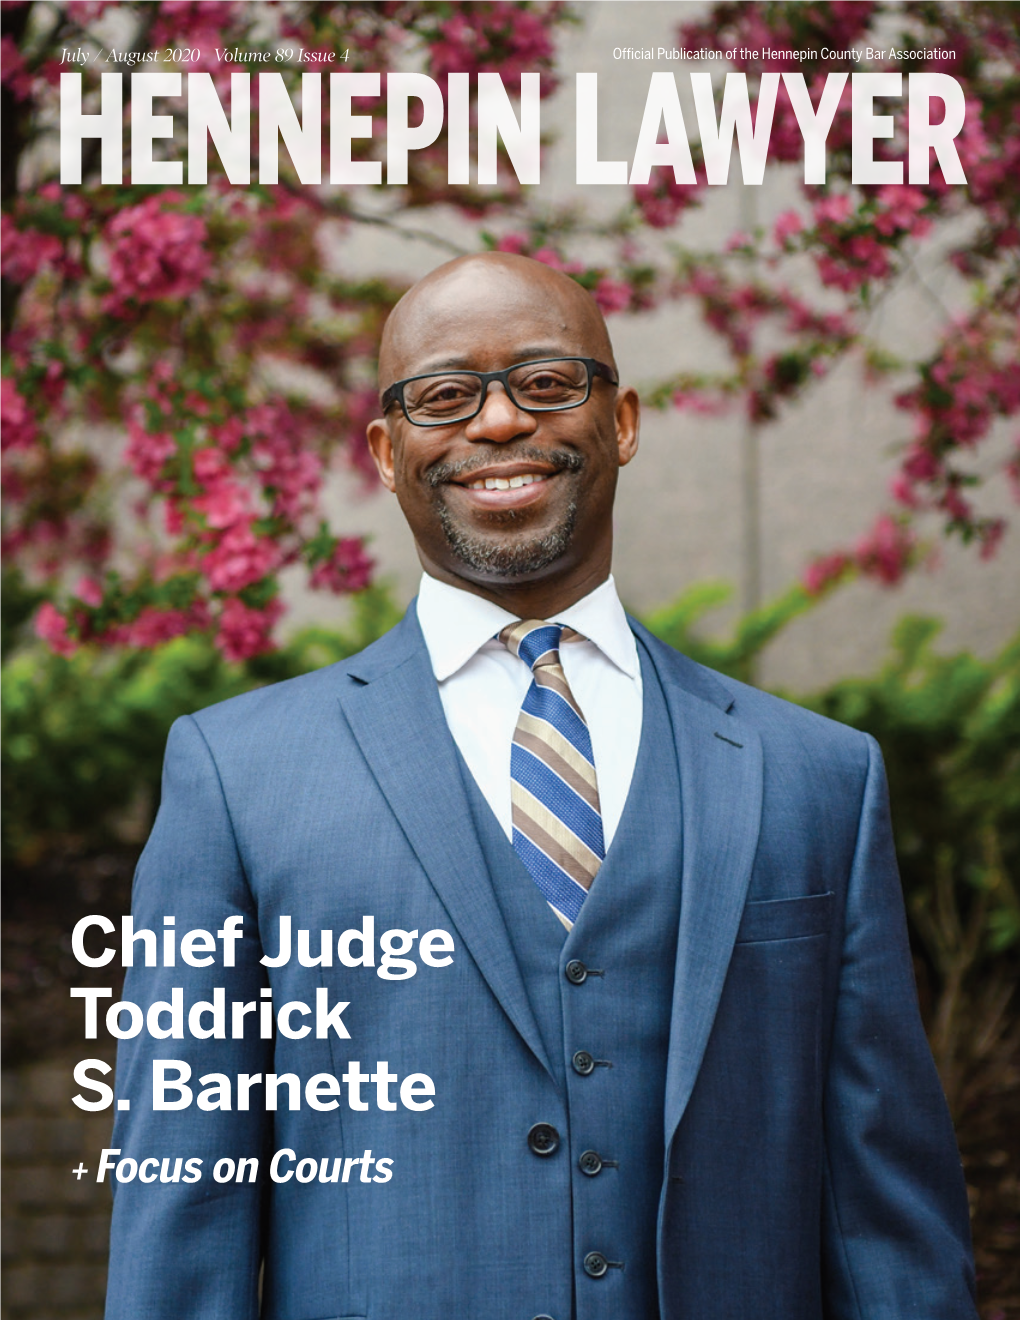 Chief Judge Toddrick S. Barnette